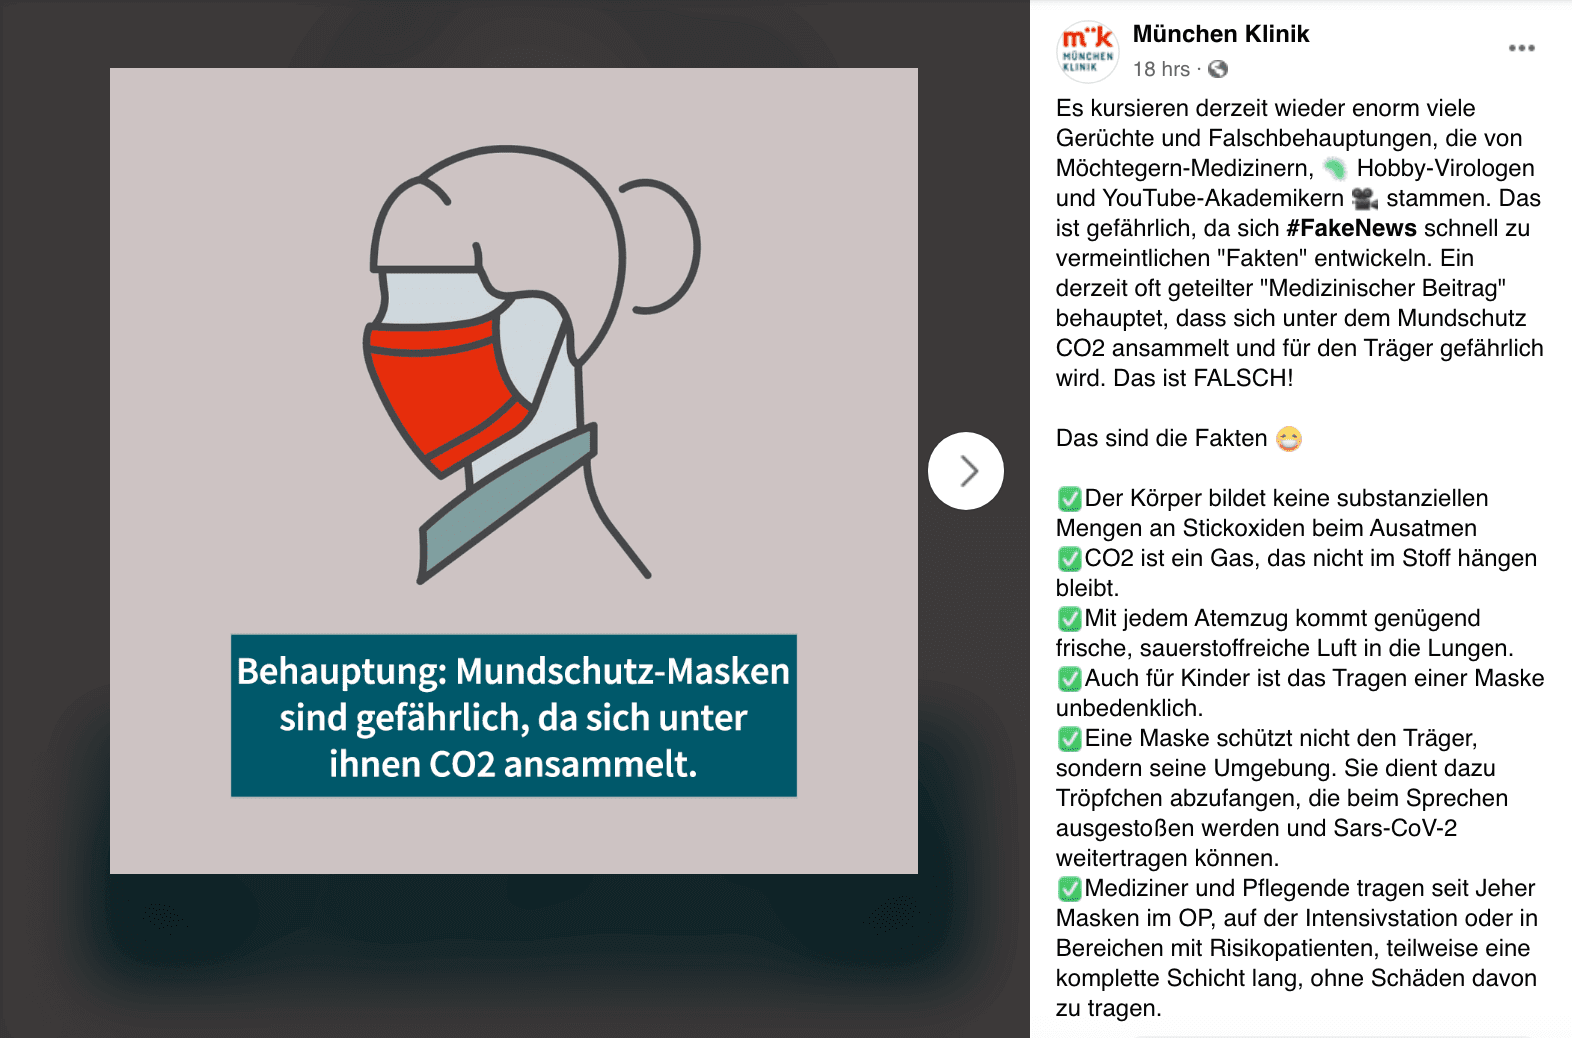 Die München Klinik erklärte am 19. Mai 2020 auf Facebook: Die Behauptung, unter Masken sammele sich gefährliches CO2, sei falsch.